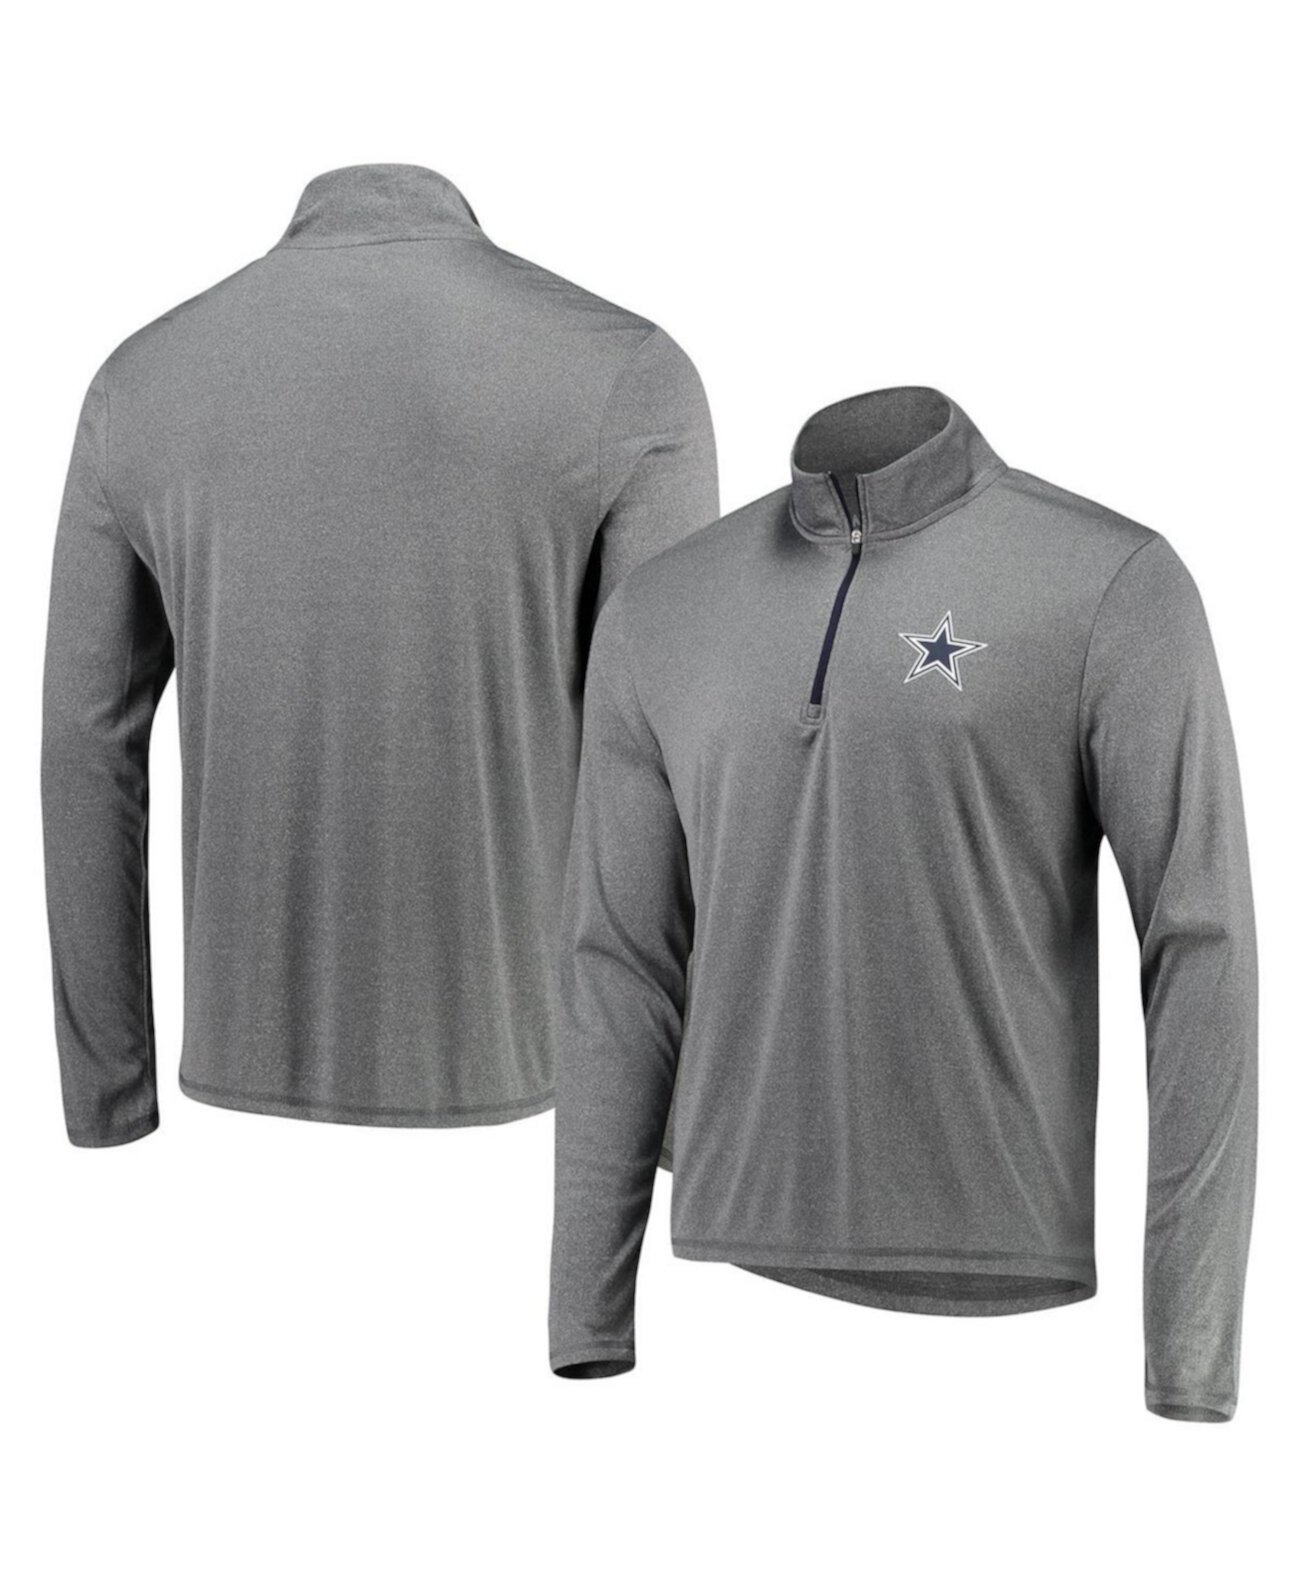 Мужская темно-серая пуловерная куртка Arnie с молнией 1/4 в меланжевом цвете Dallas Cowboys